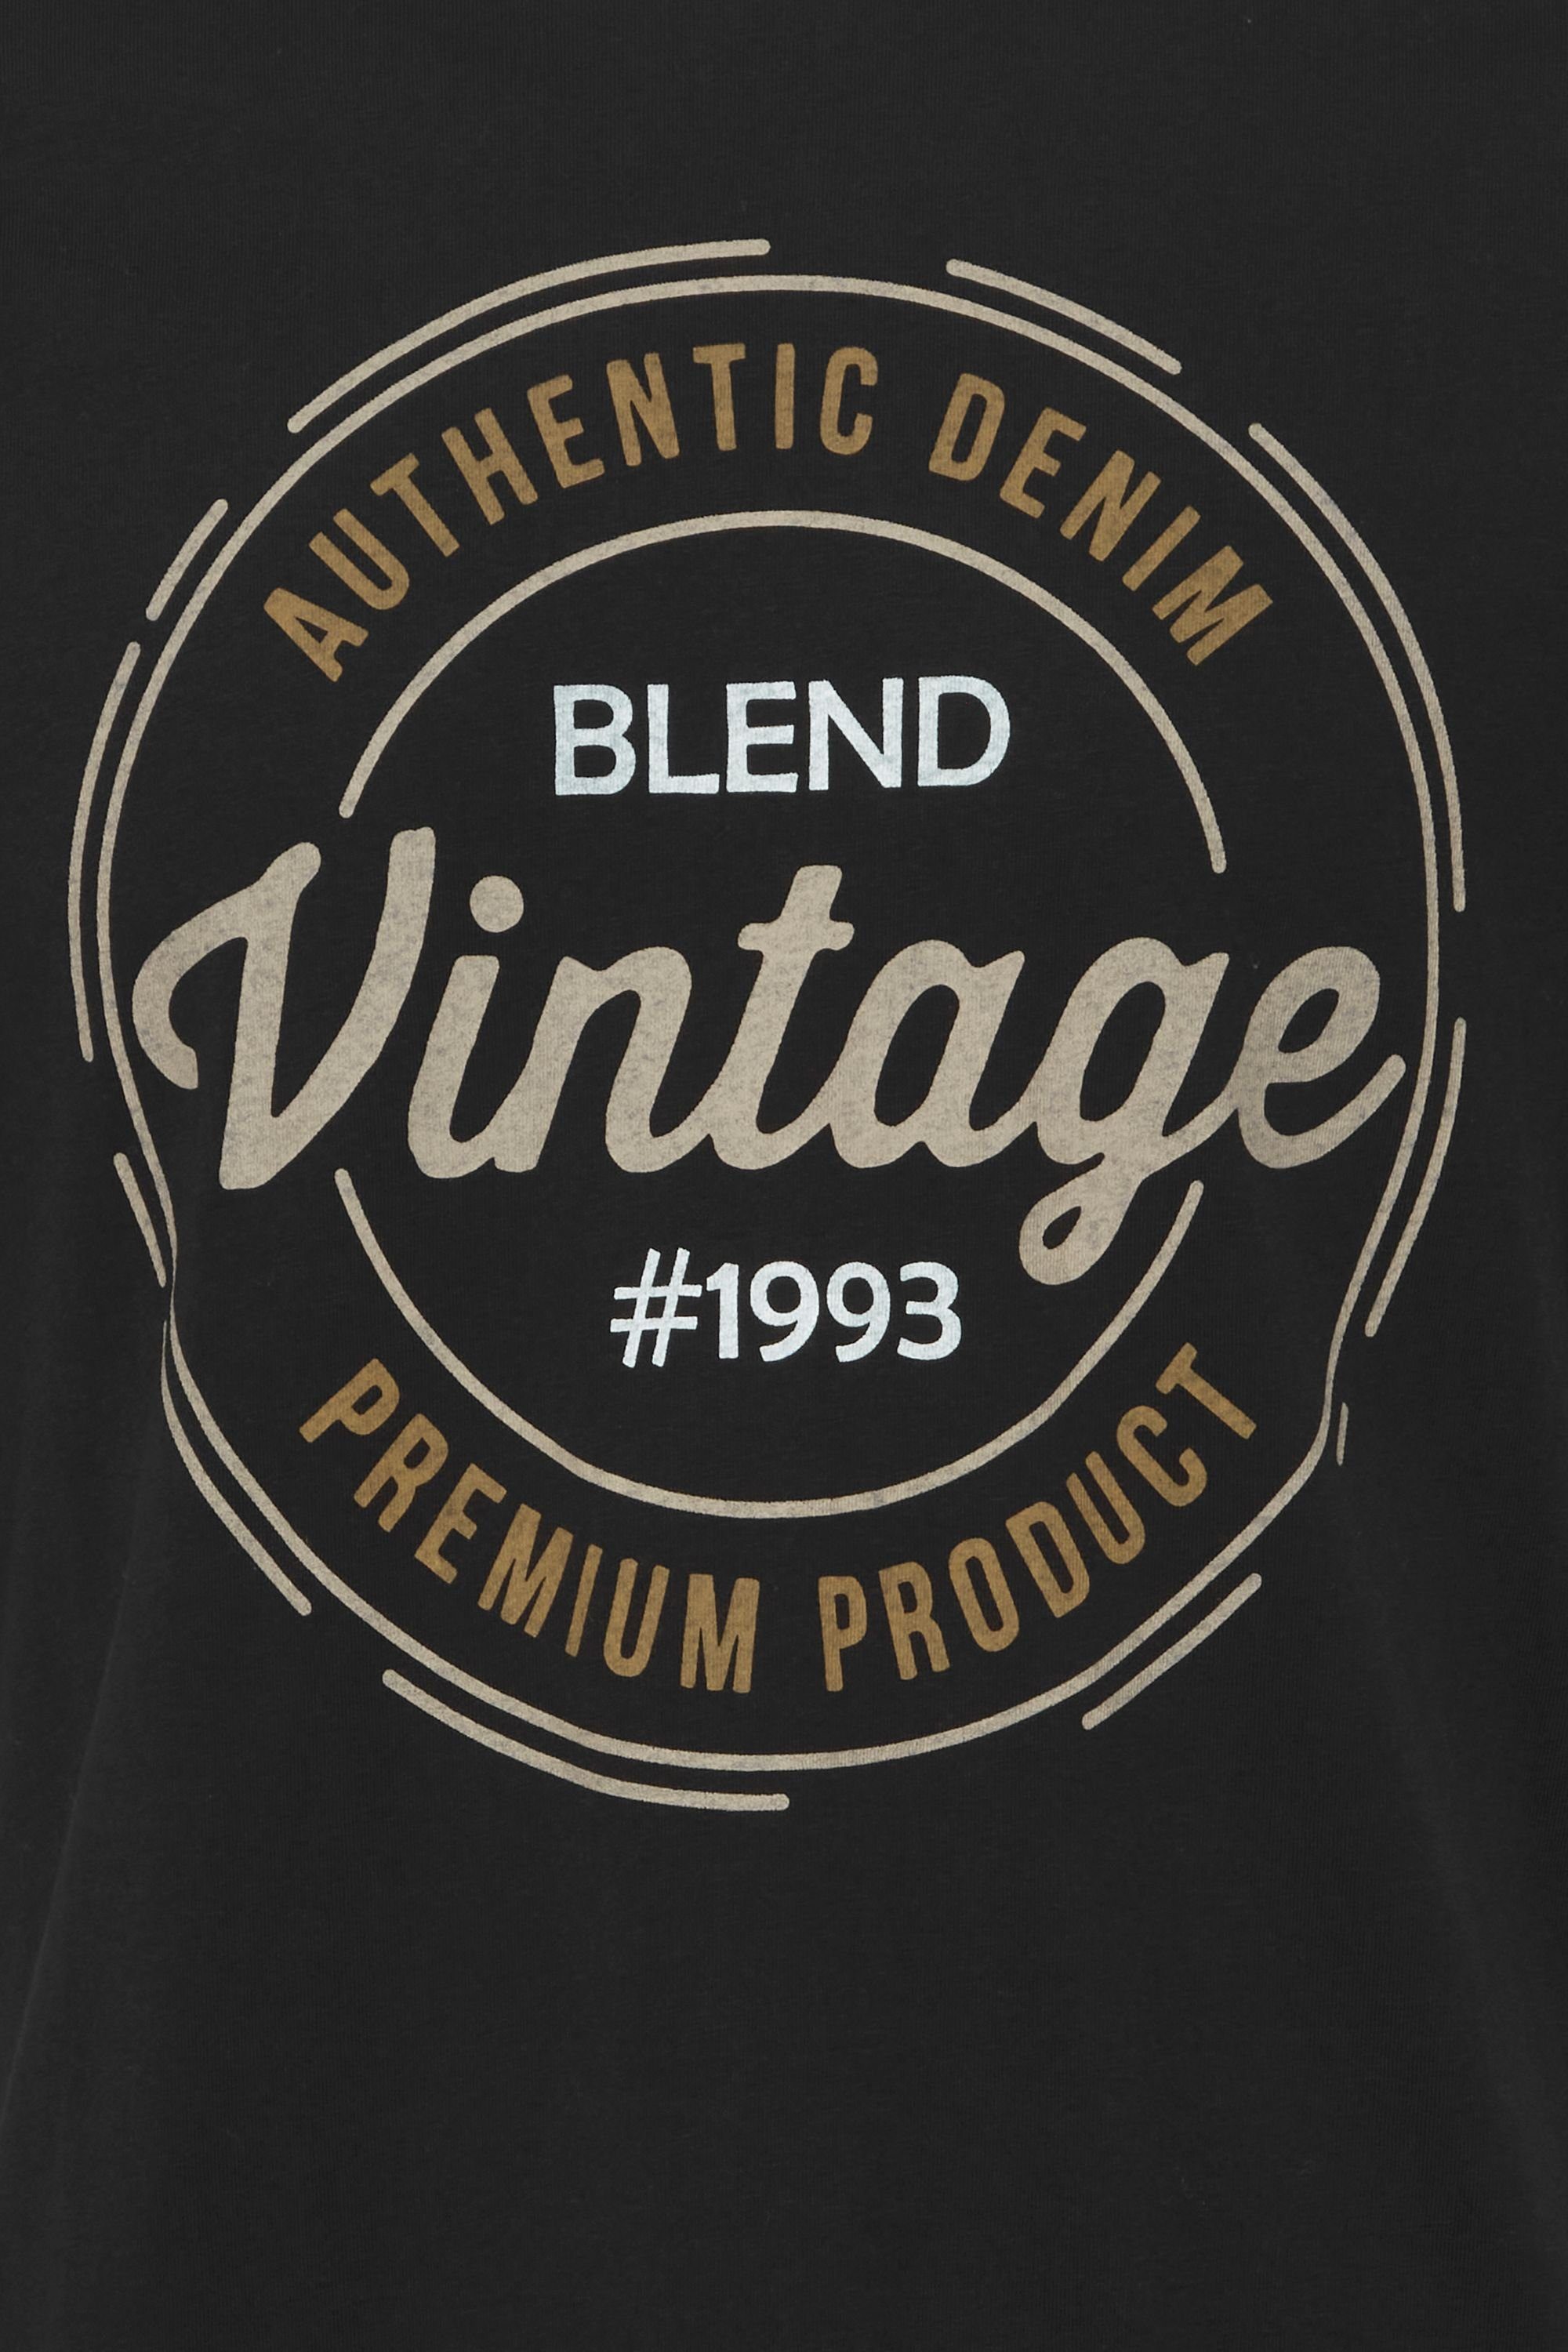 BLEND 20714811 Tee T-Shirt Black Blend